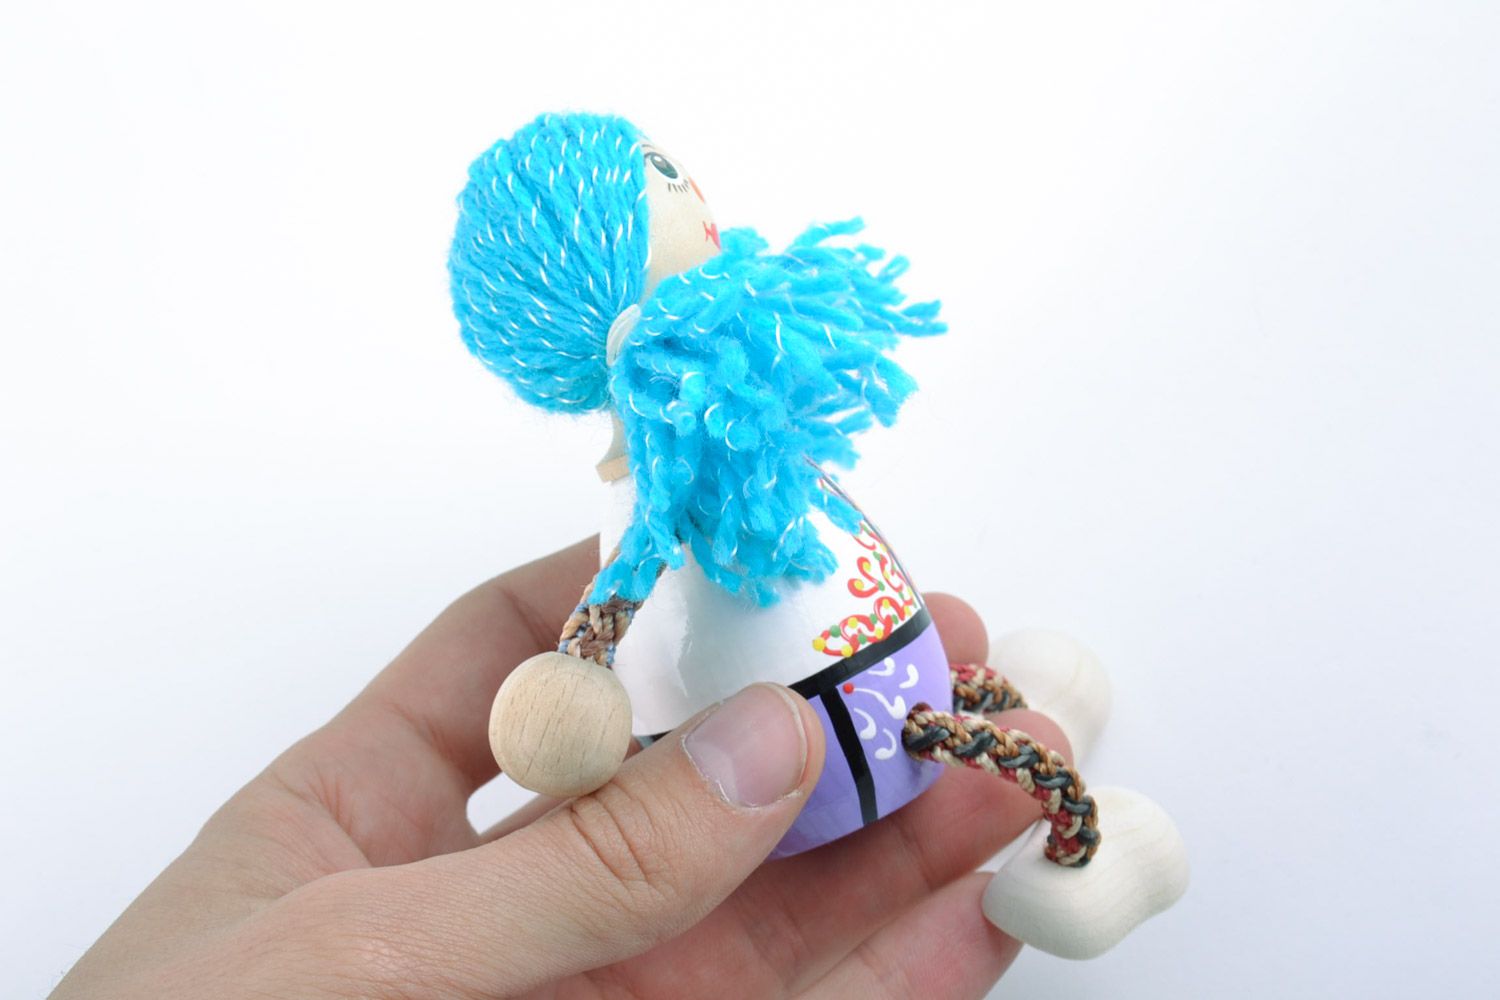 Petit jouet artisanal fait main écologique peint Fille aux cheveux bleus photo 2